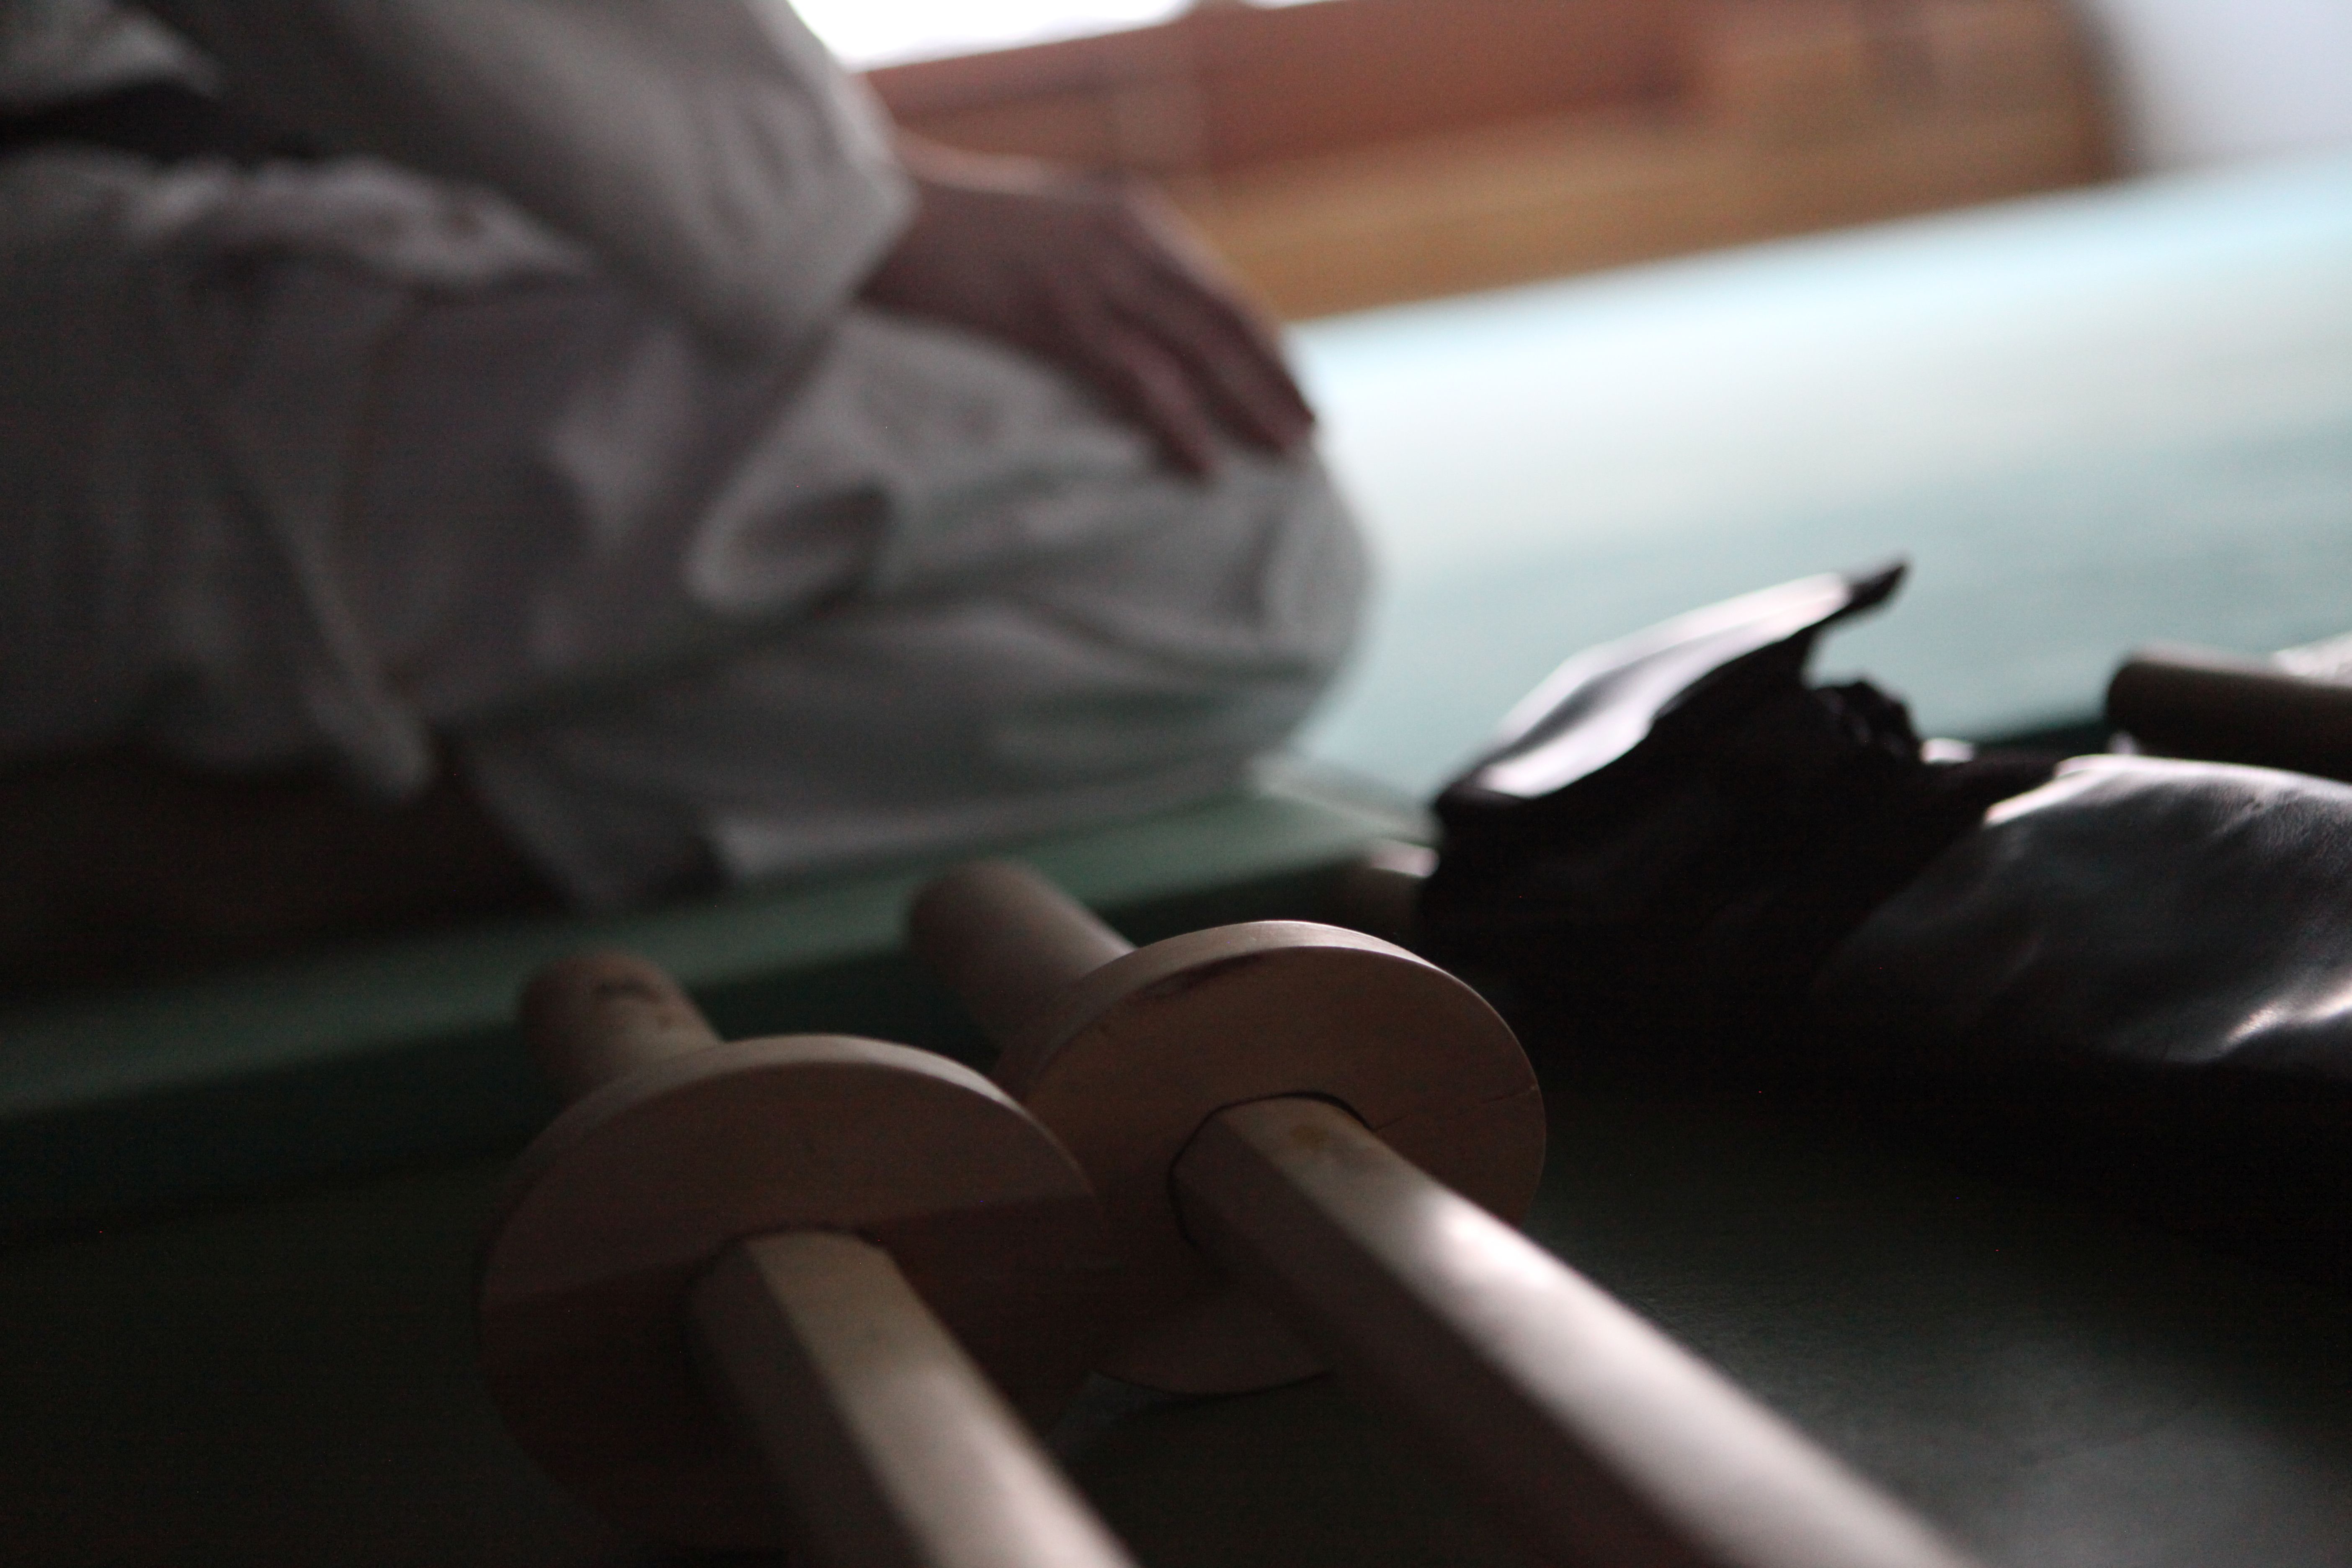 Aikido-Schwerter liegen bereit am Rand der Trainingsfläche. Ein Aikidoka sitzt auf der Matte.